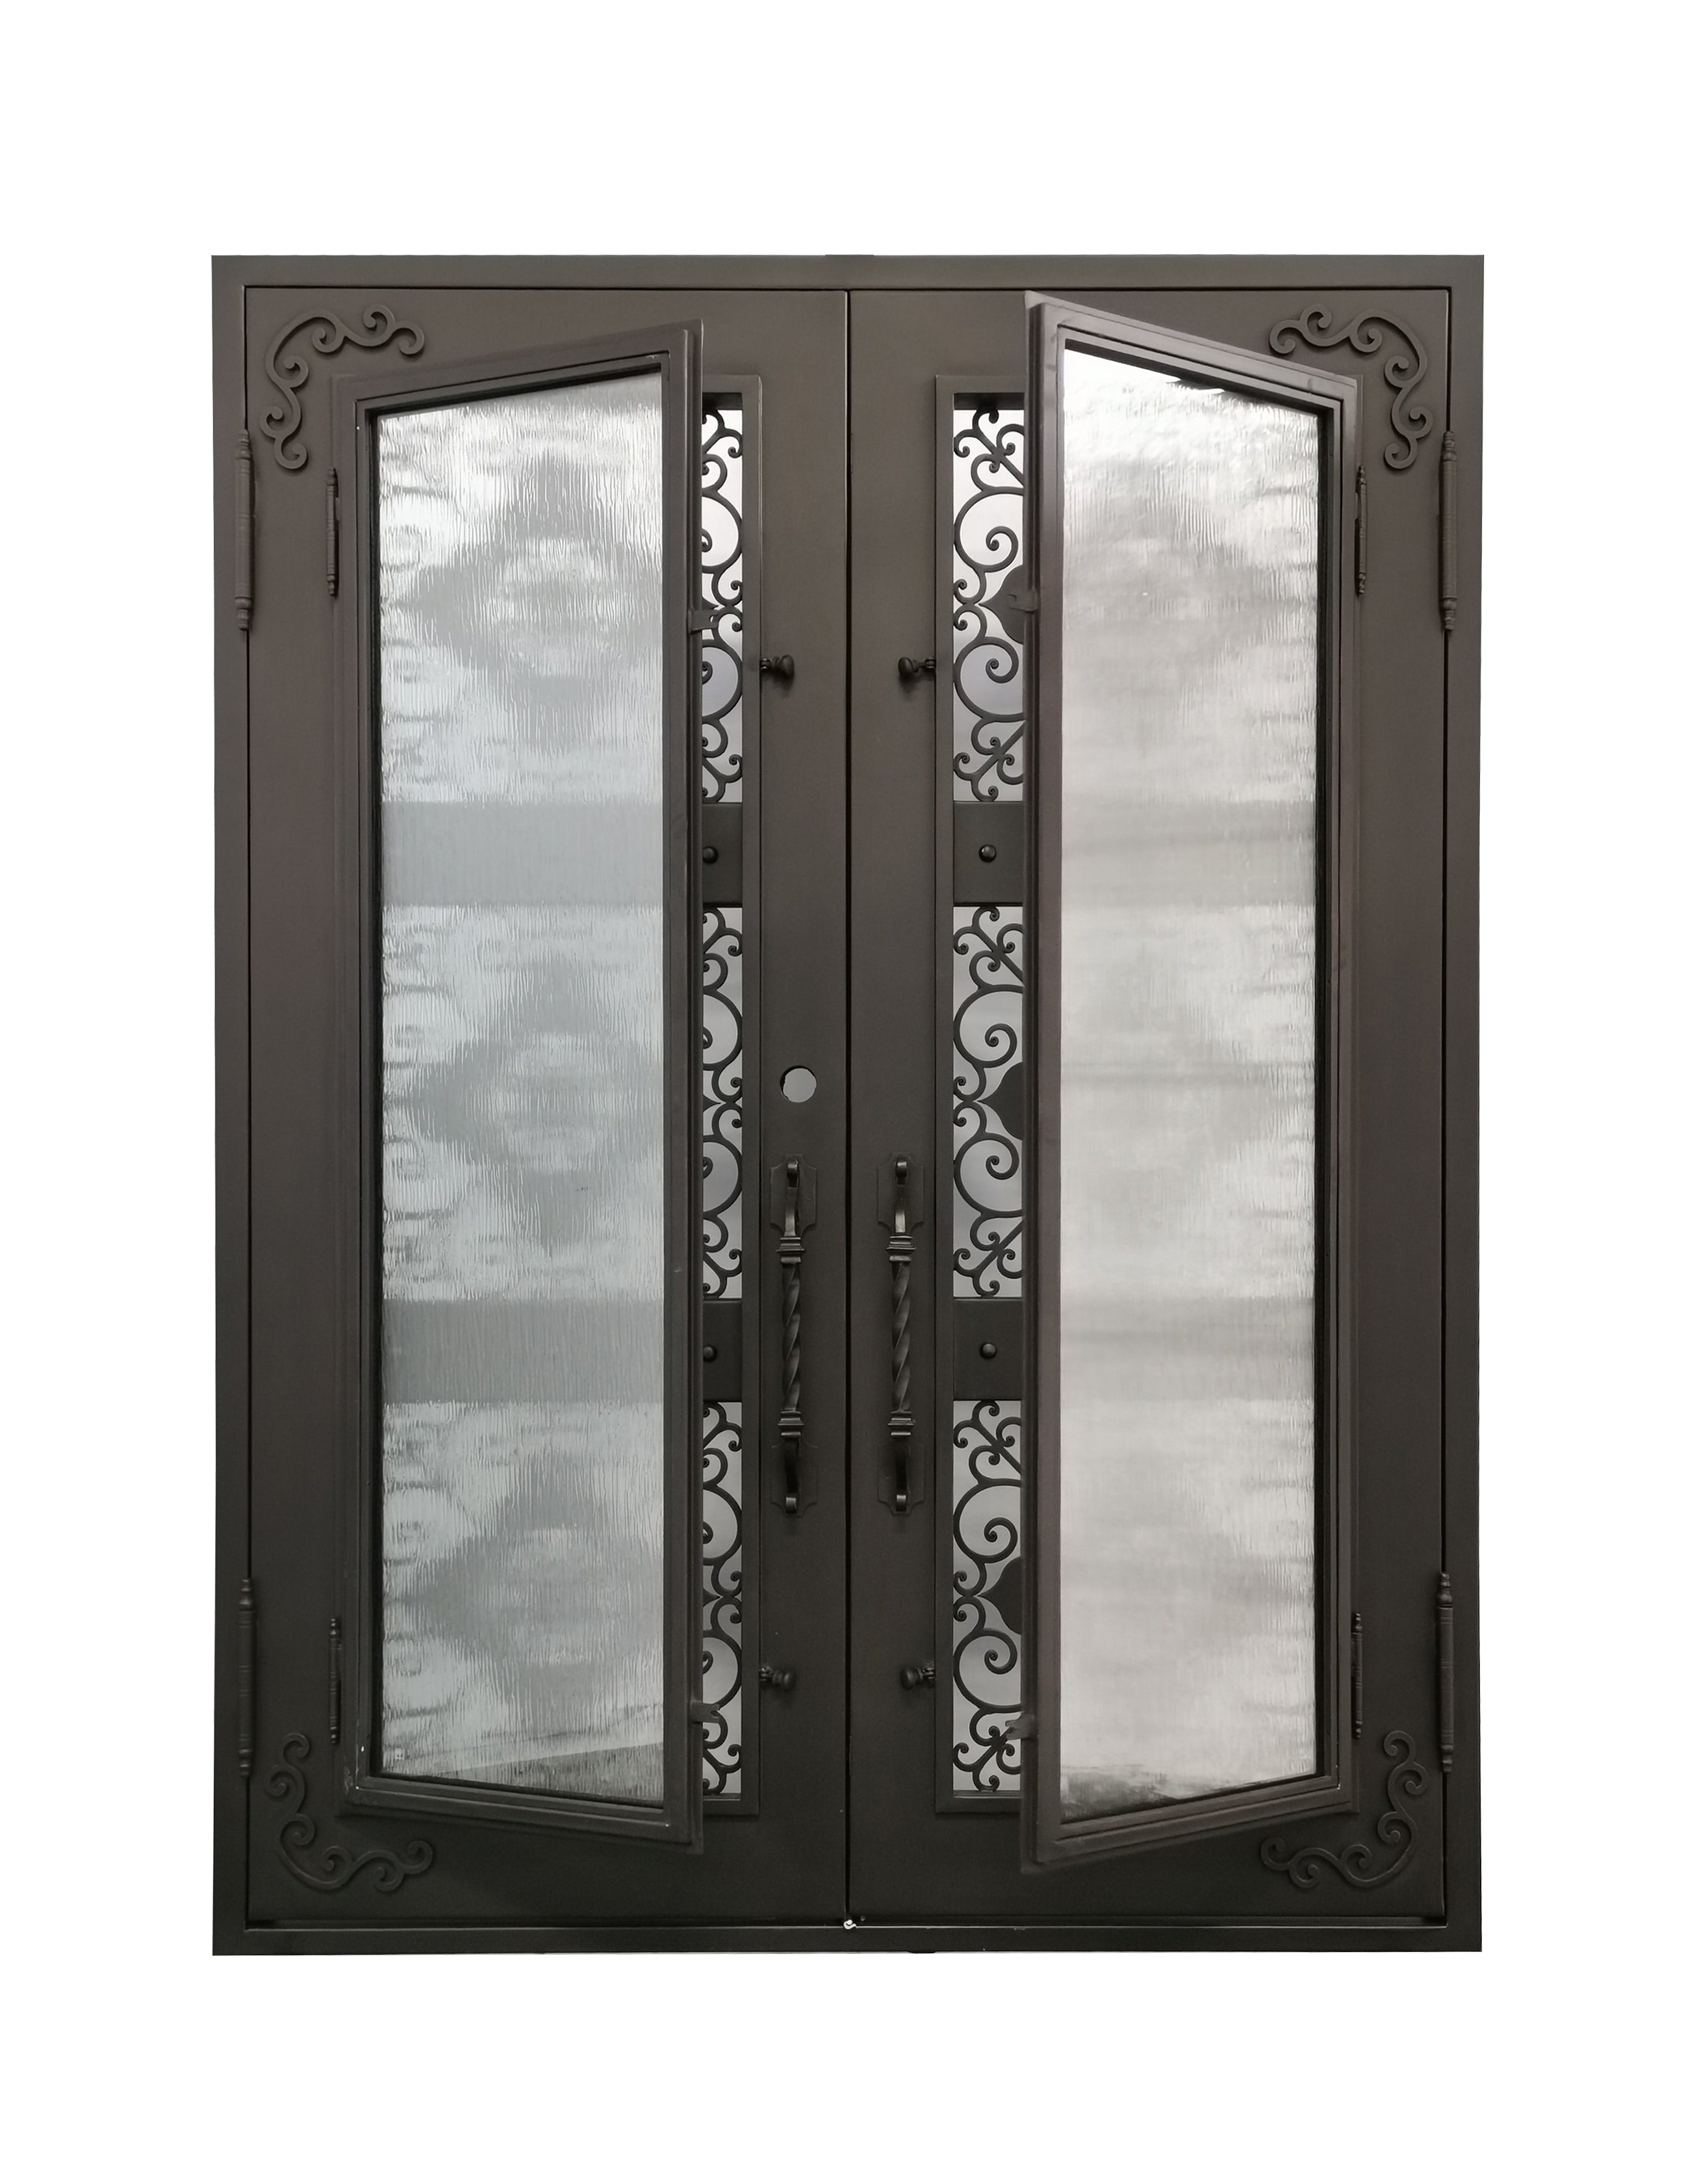 Allen Model Double Front Entry Iron Door With Tempered Rain Glass Dark Bronze Finish - AAWAIZ IMPORTS